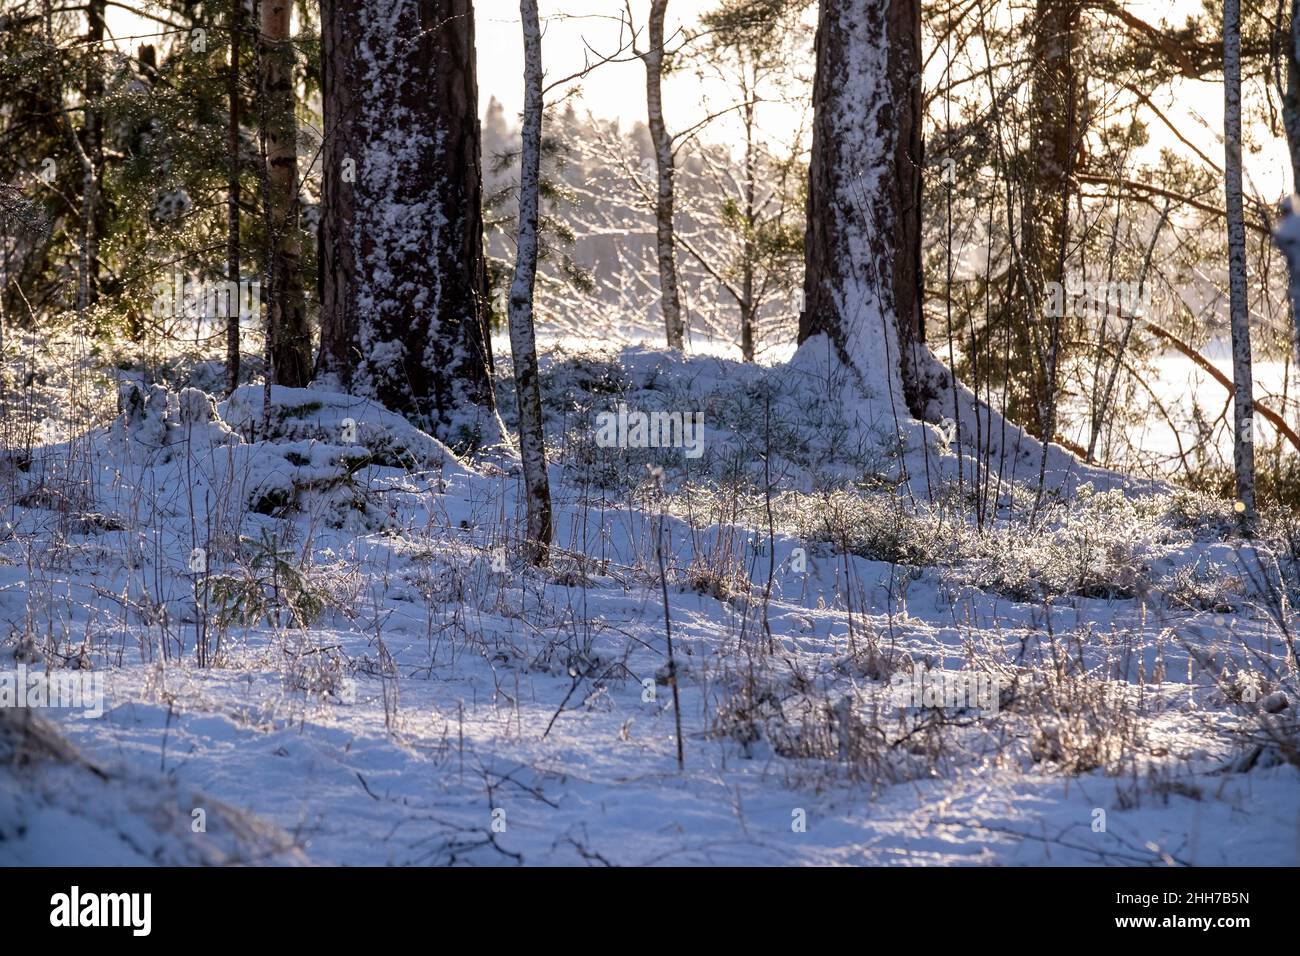 Helsinki / Finlandia - 17 GENNAIO 2022: Foresta invernale finlandese in una giornata soleggiata e fredda. I raggi del sole gettano i riflessi dietro gli alberi. Foto Stock